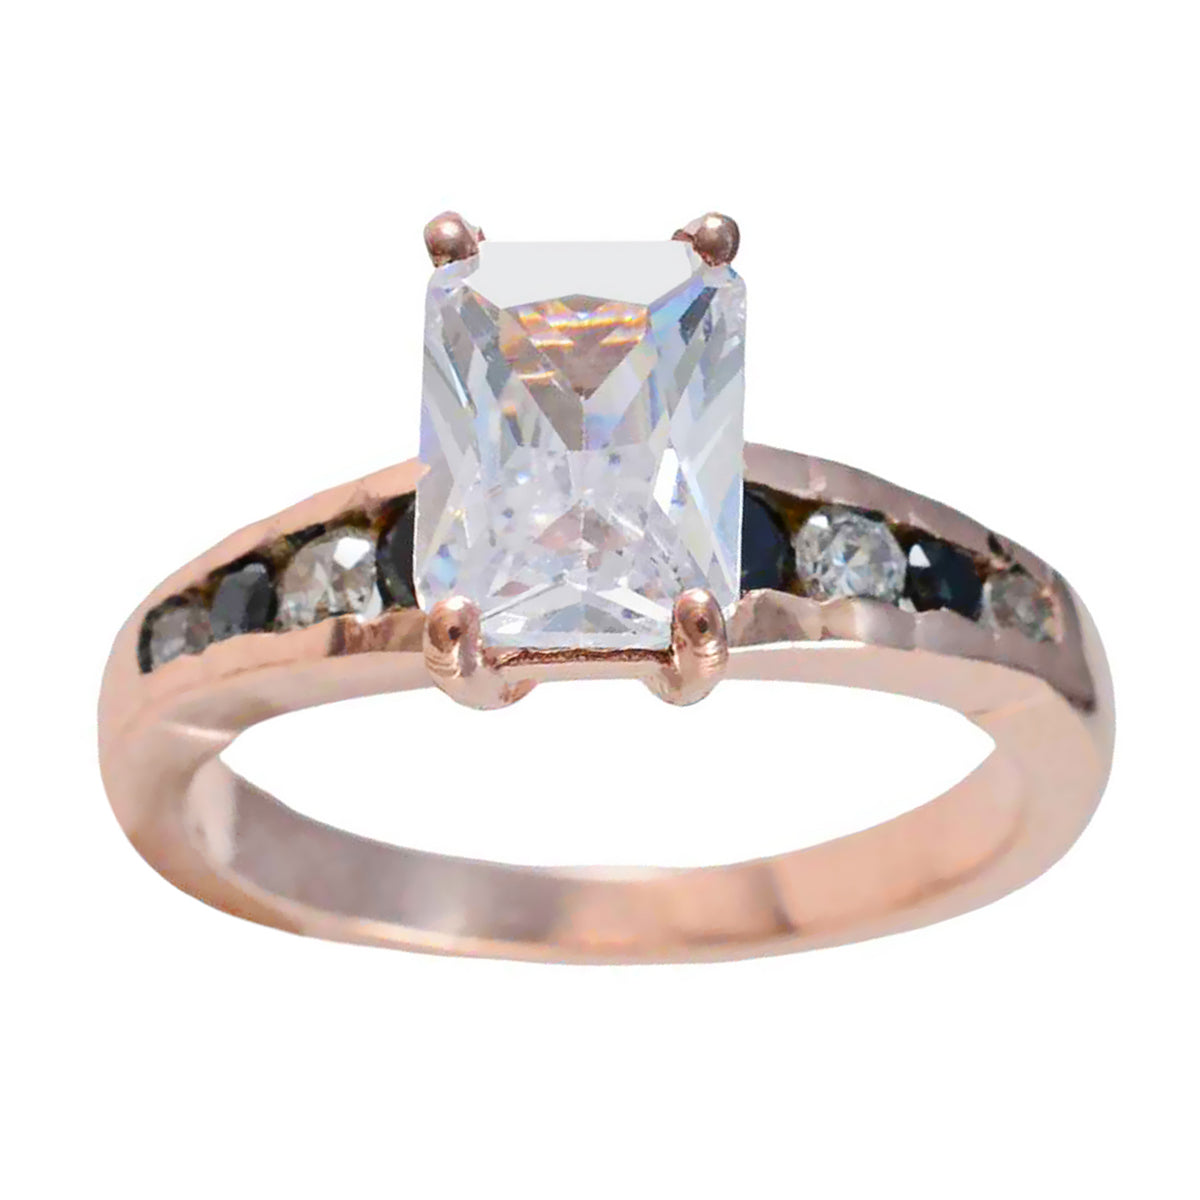 Riyo Schattige zilveren ring met roségoudkleurige blauwe saffiersteen, achthoekige vorm, stijlvolle sieraden, jubileumring